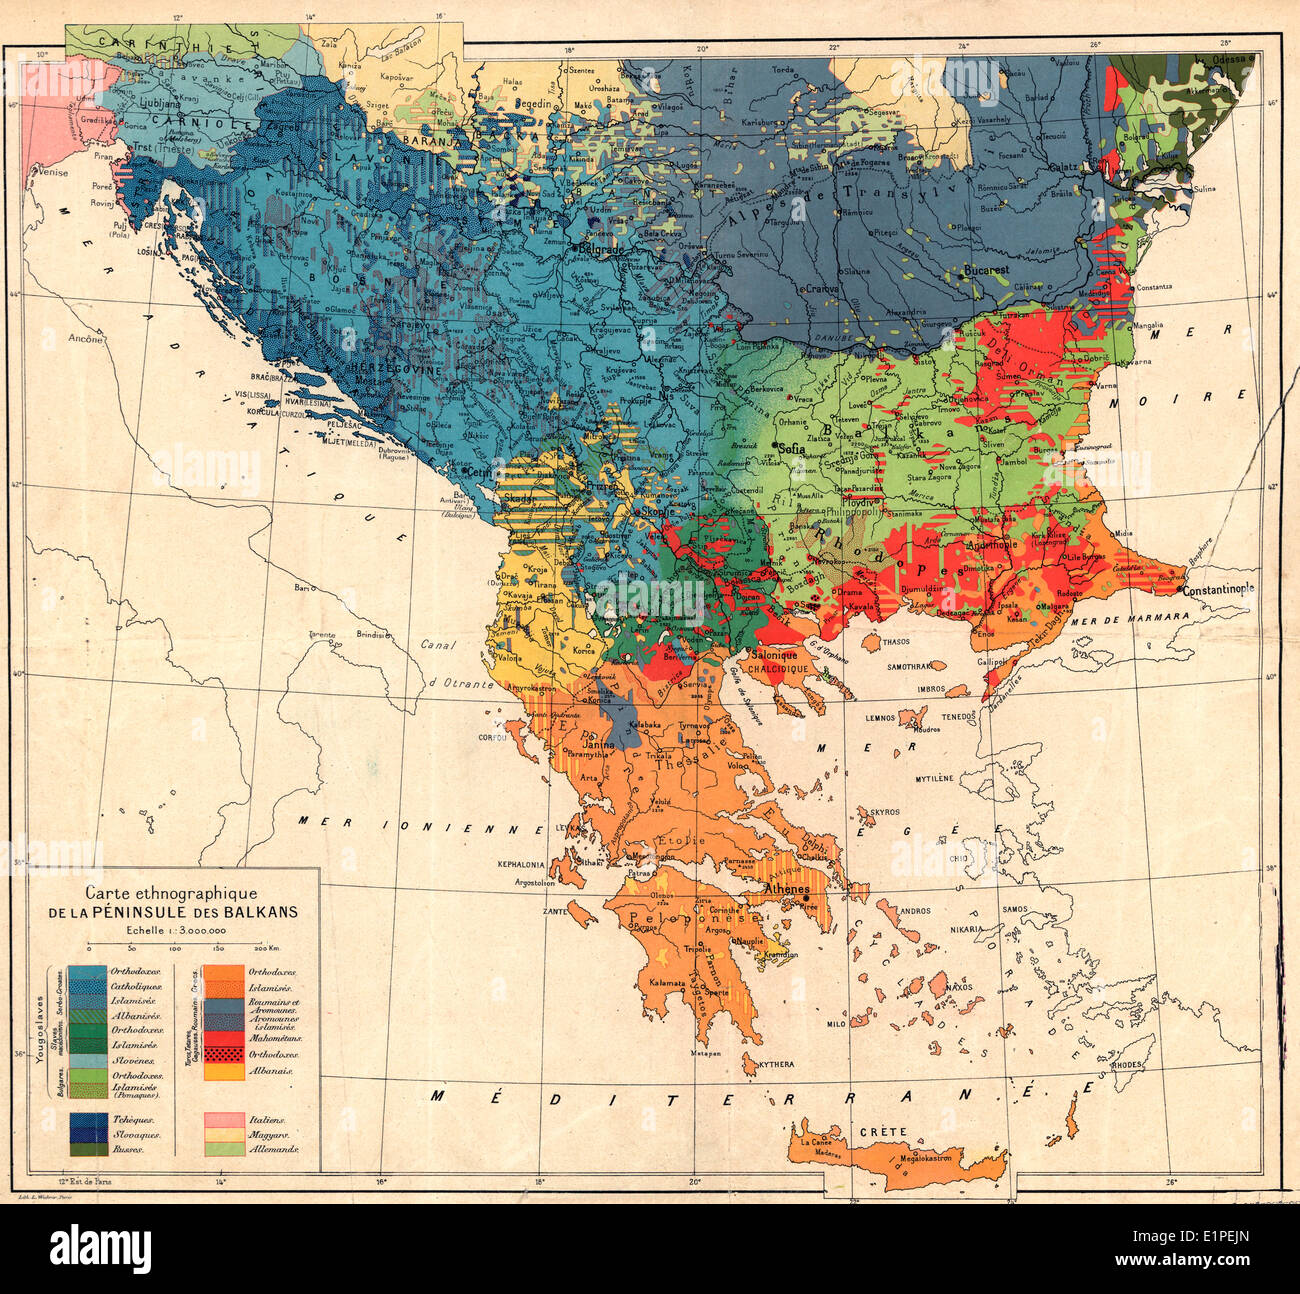 Carte ethnographique de la Péninsule des Balkans carte ethnographique de la péninsule des Balkans, Jovan Cvijić 1918 Banque D'Images